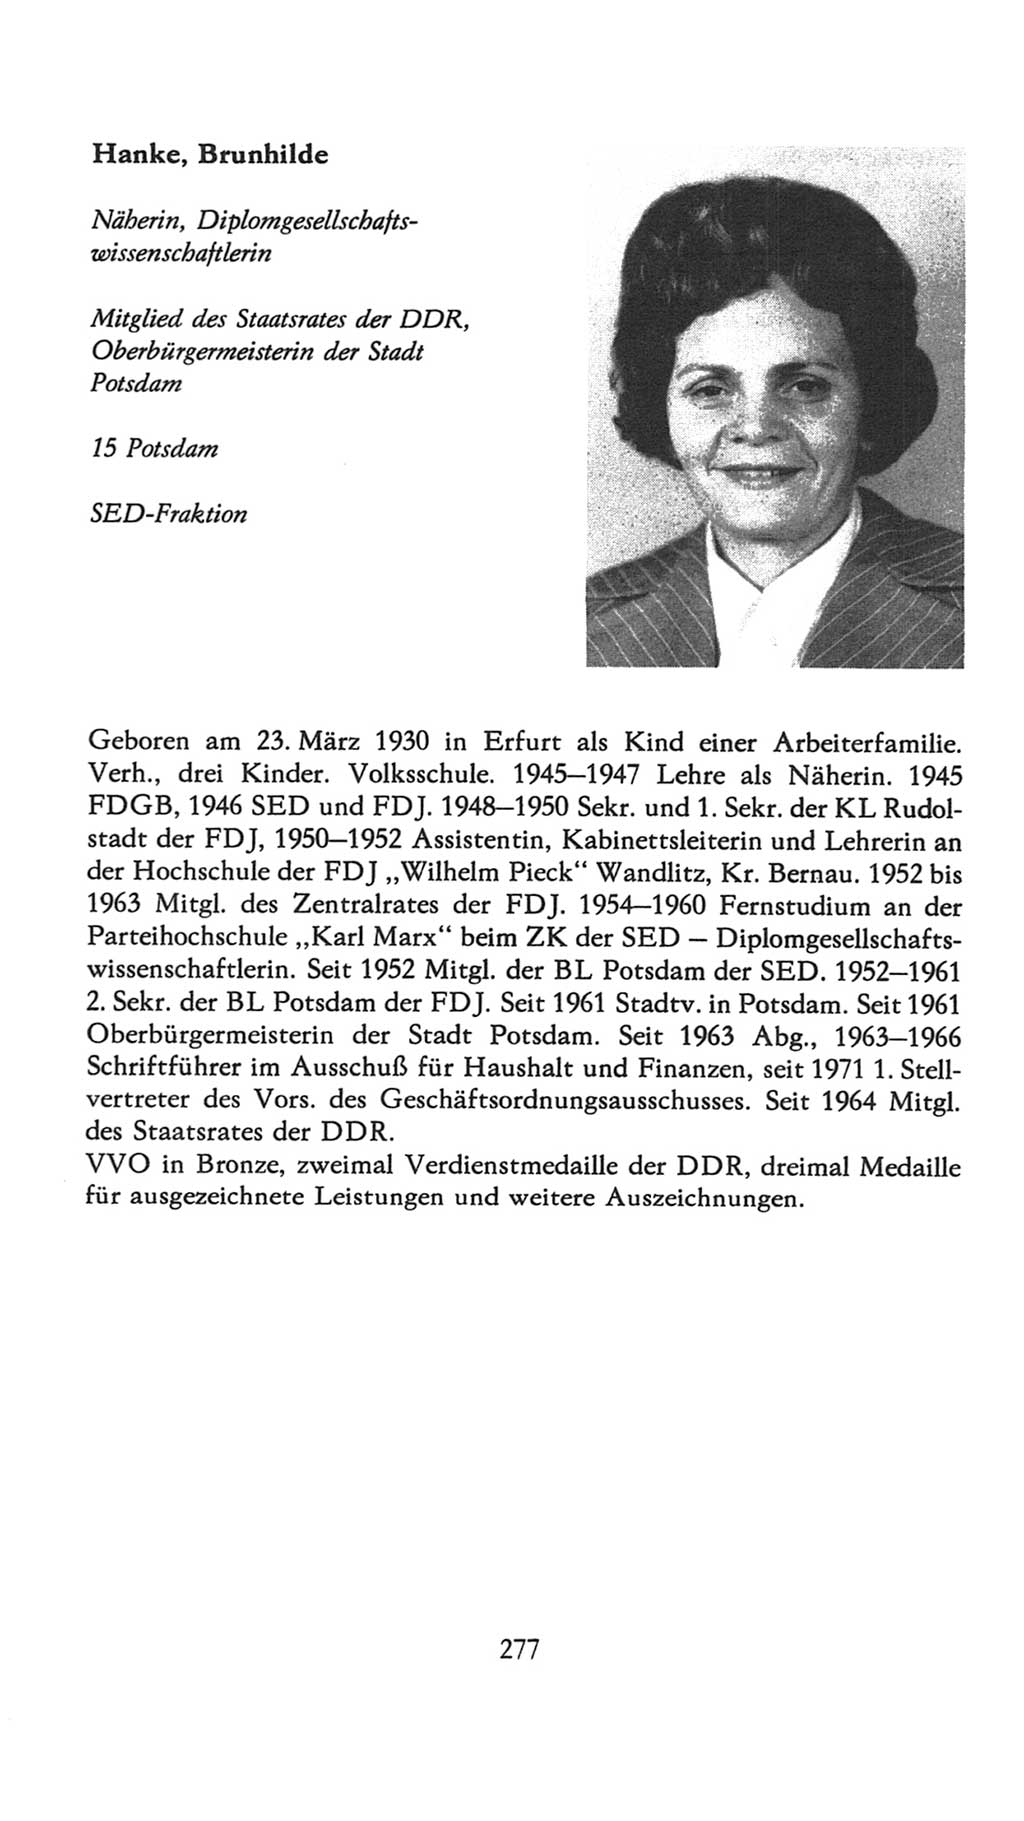 Volkskammer (VK) der Deutschen Demokratischen Republik (DDR), 7. Wahlperiode 1976-1981, Seite 277 (VK. DDR 7. WP. 1976-1981, S. 277)